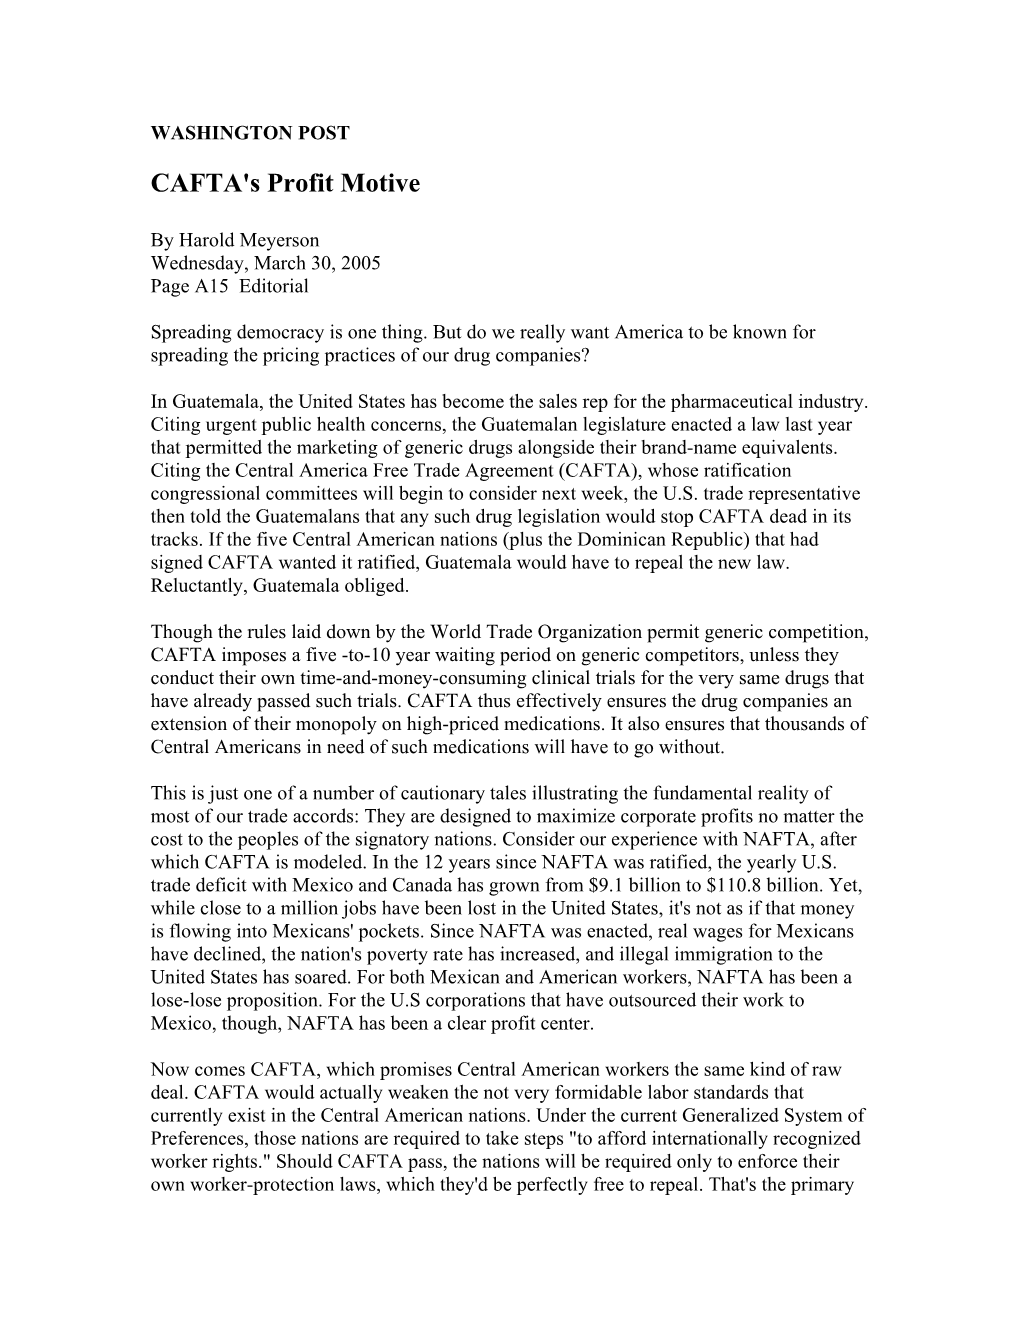 CAFTA's Profit Motive